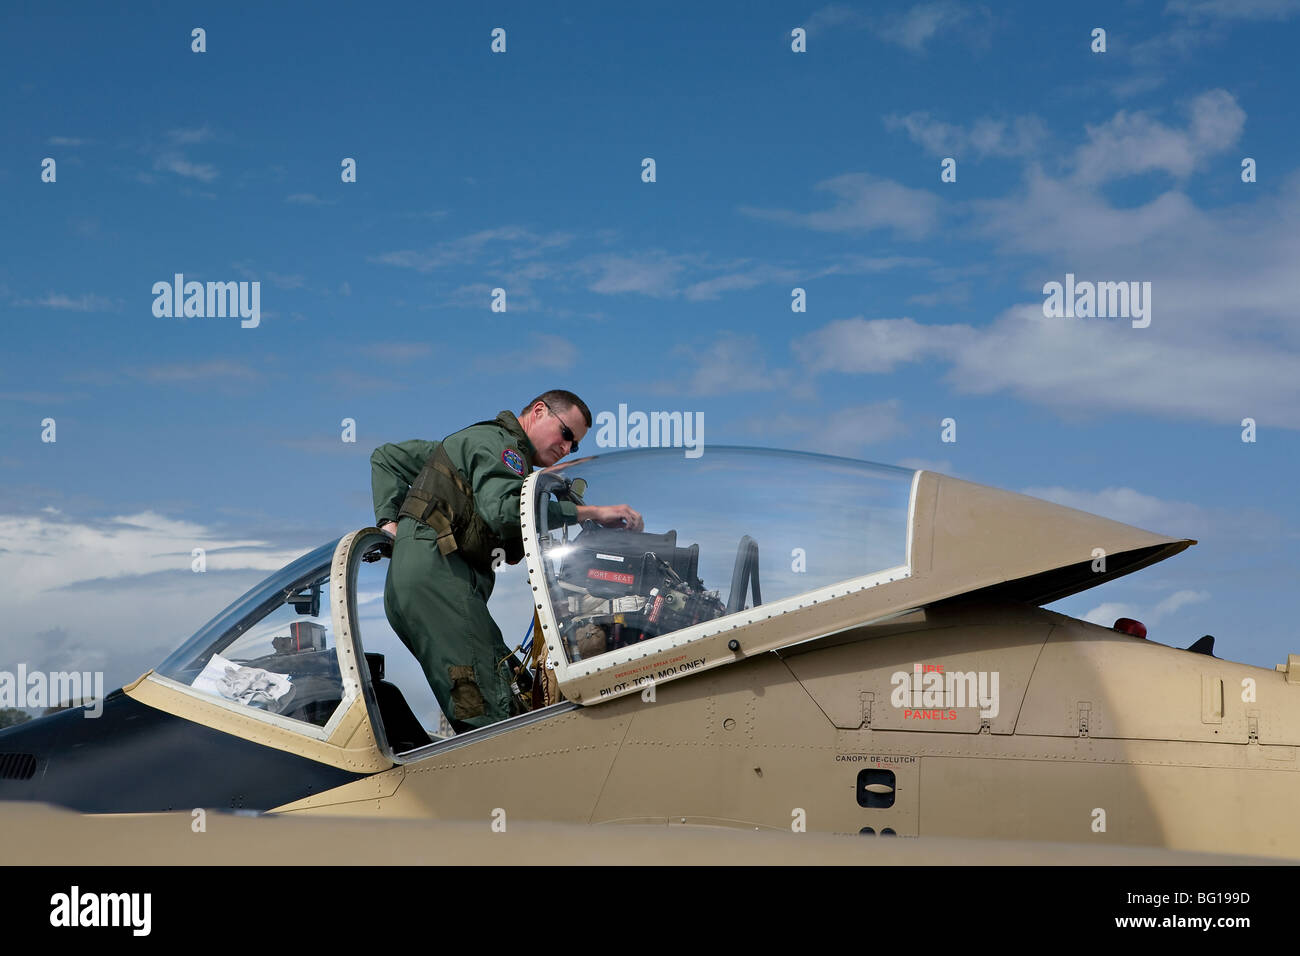 Aerei militari immagini e fotografie stock ad alta risoluzione - Alamy